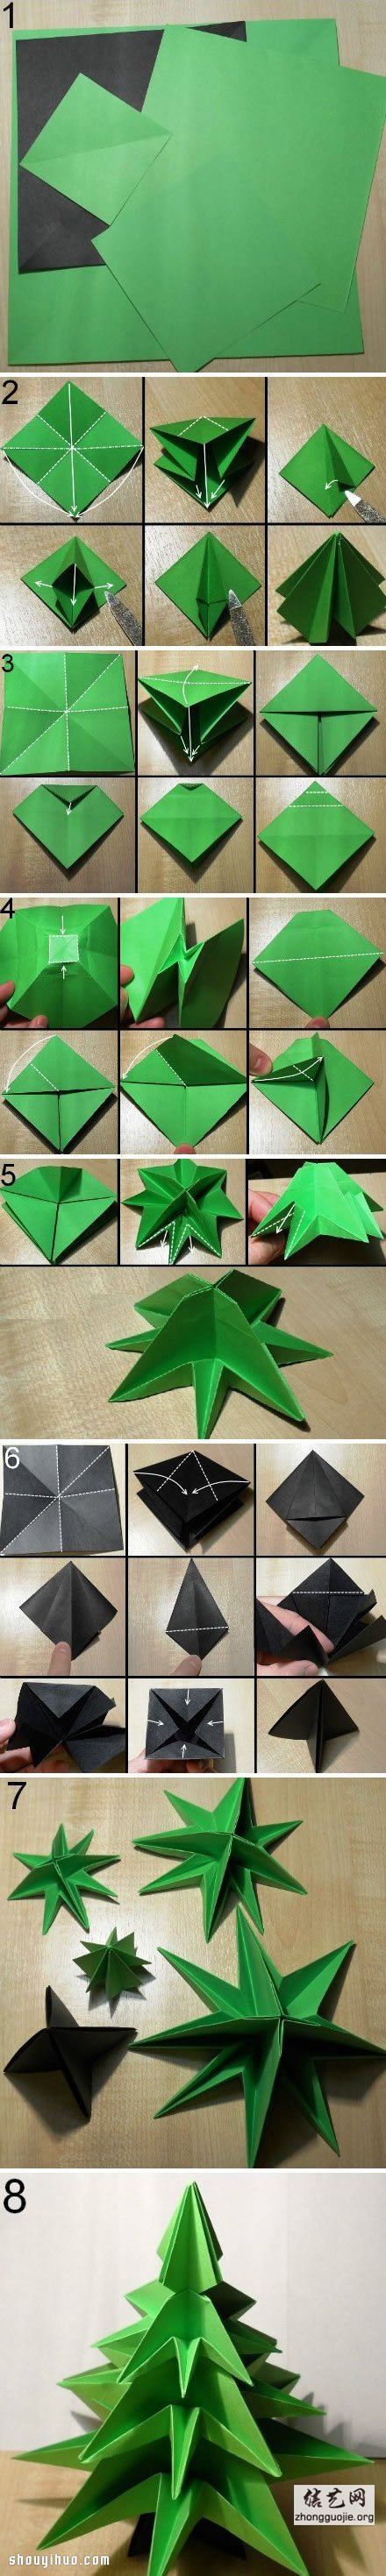 圣诞树的折法图解 手工折纸制作圣诞树教程 -  www.shouyihuo.net